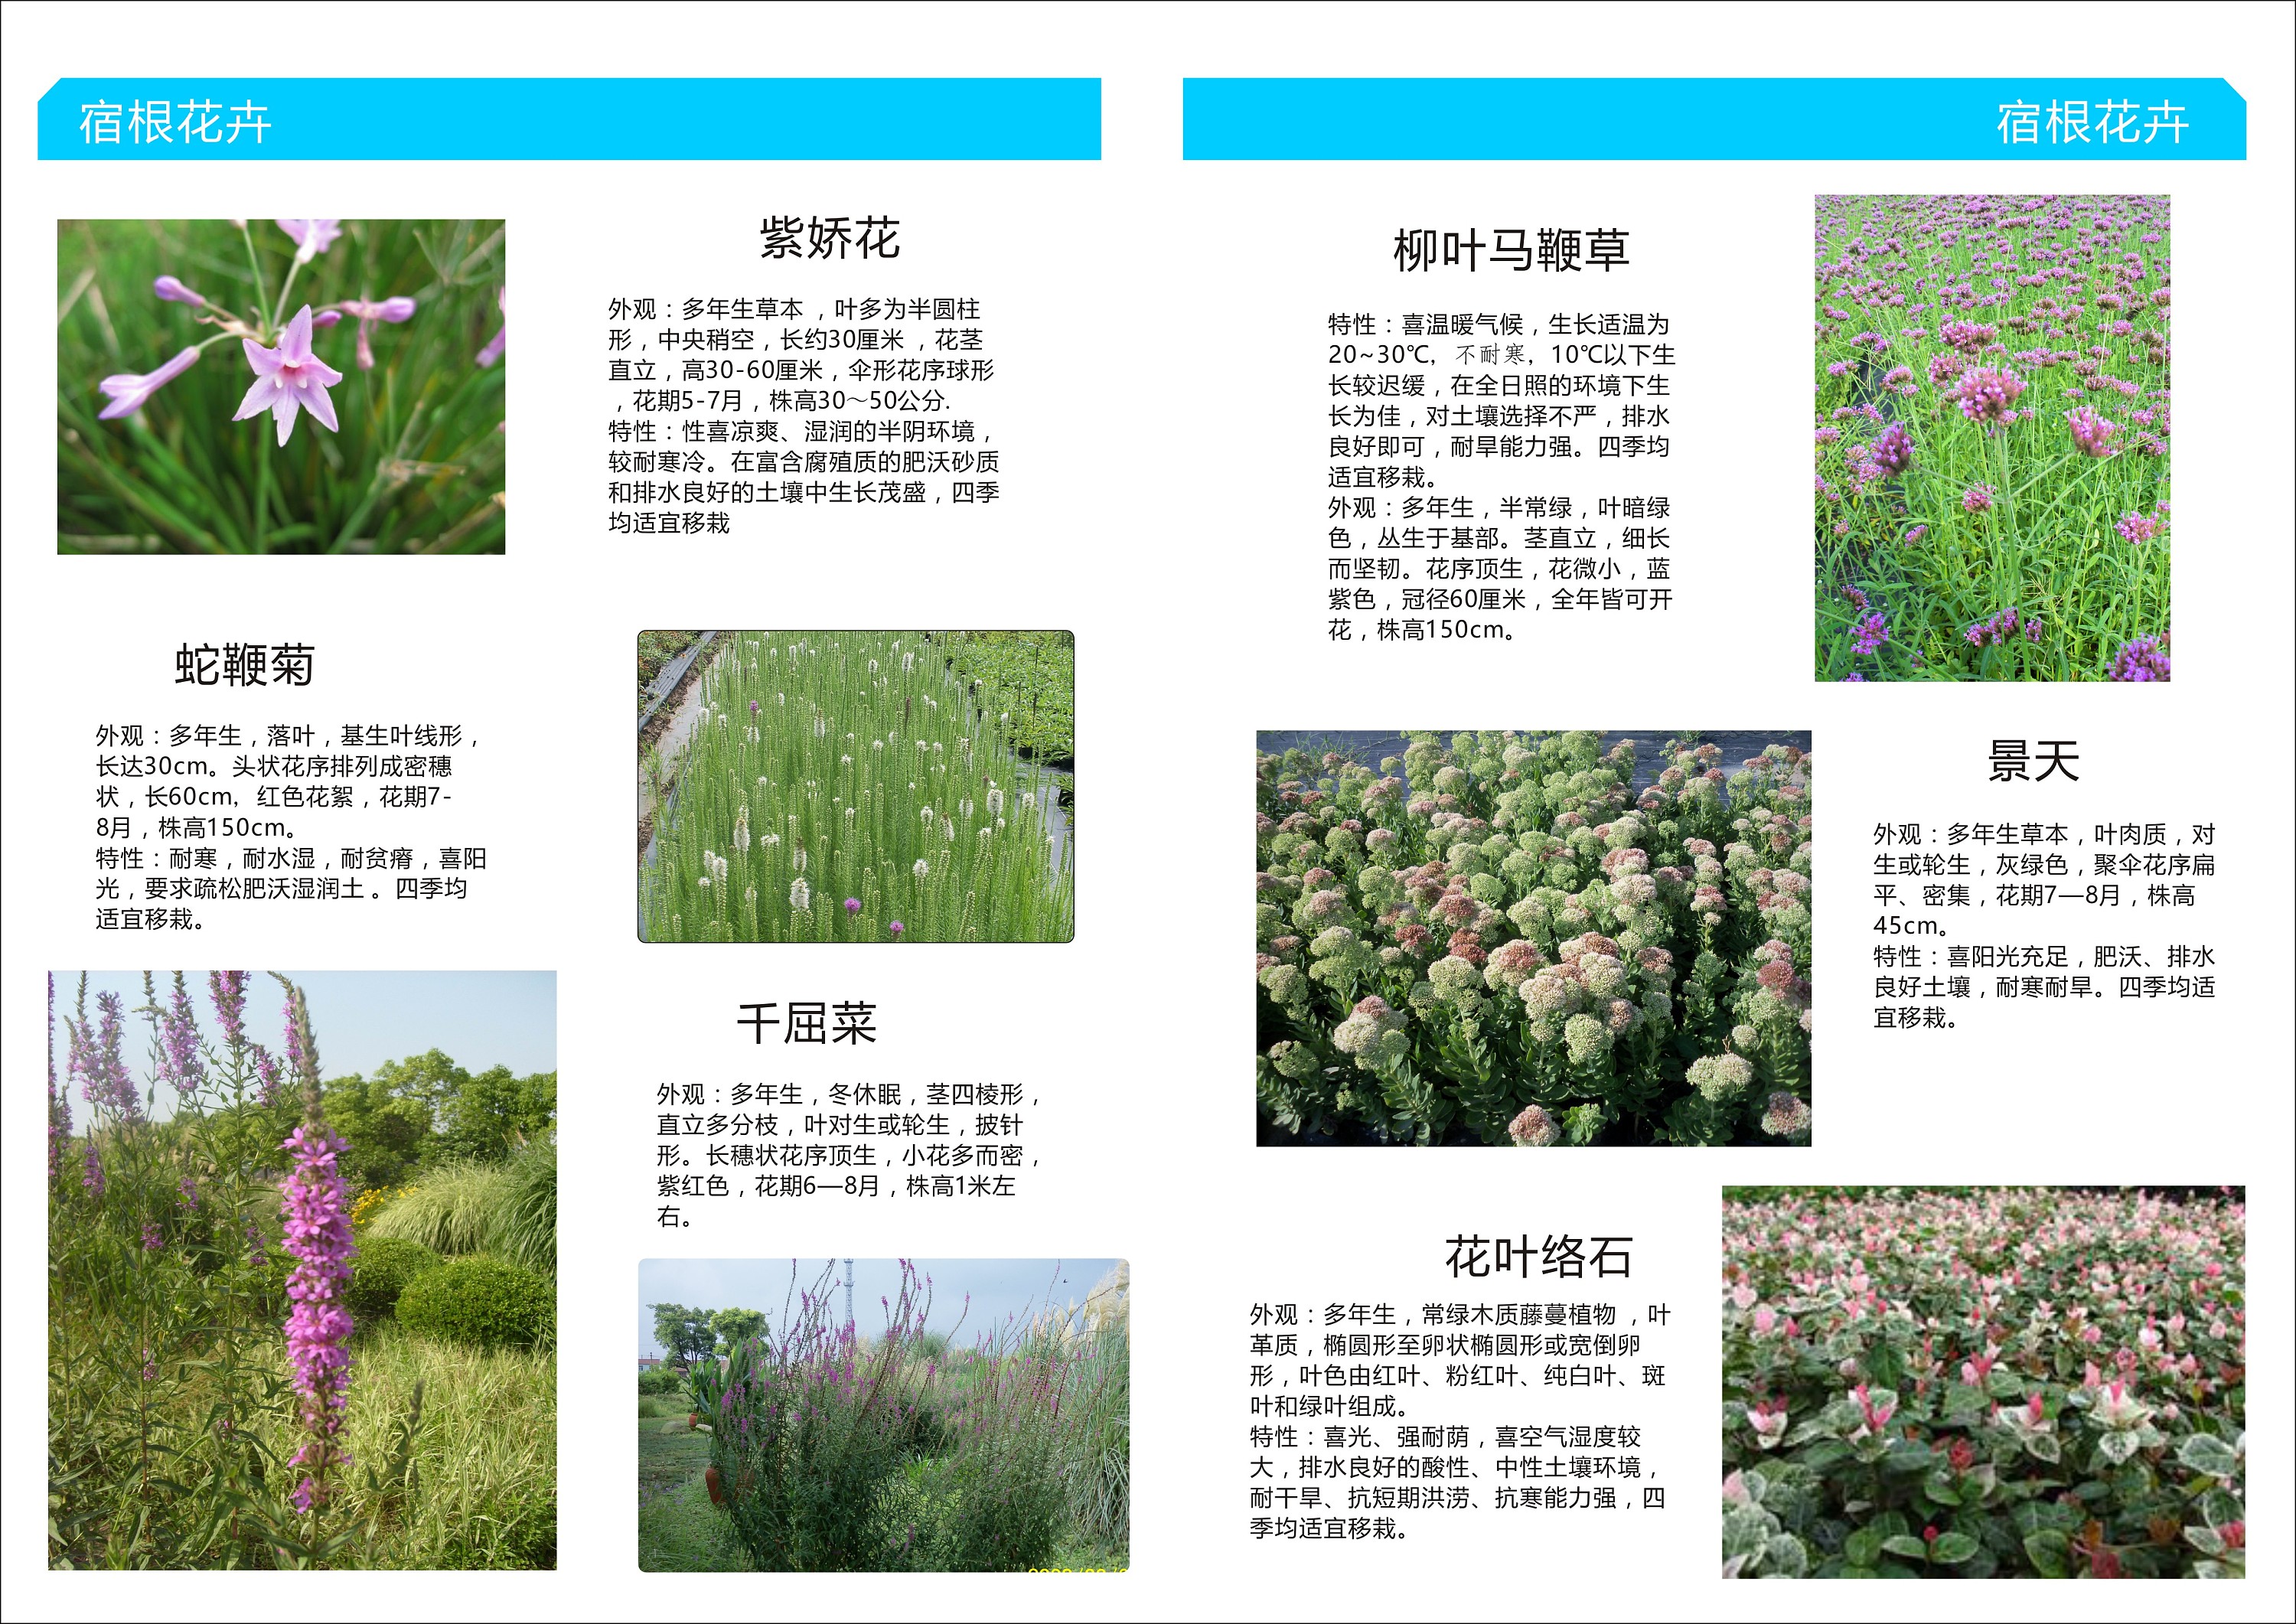 植物手册-屋顶花园植物种类手册以及介绍